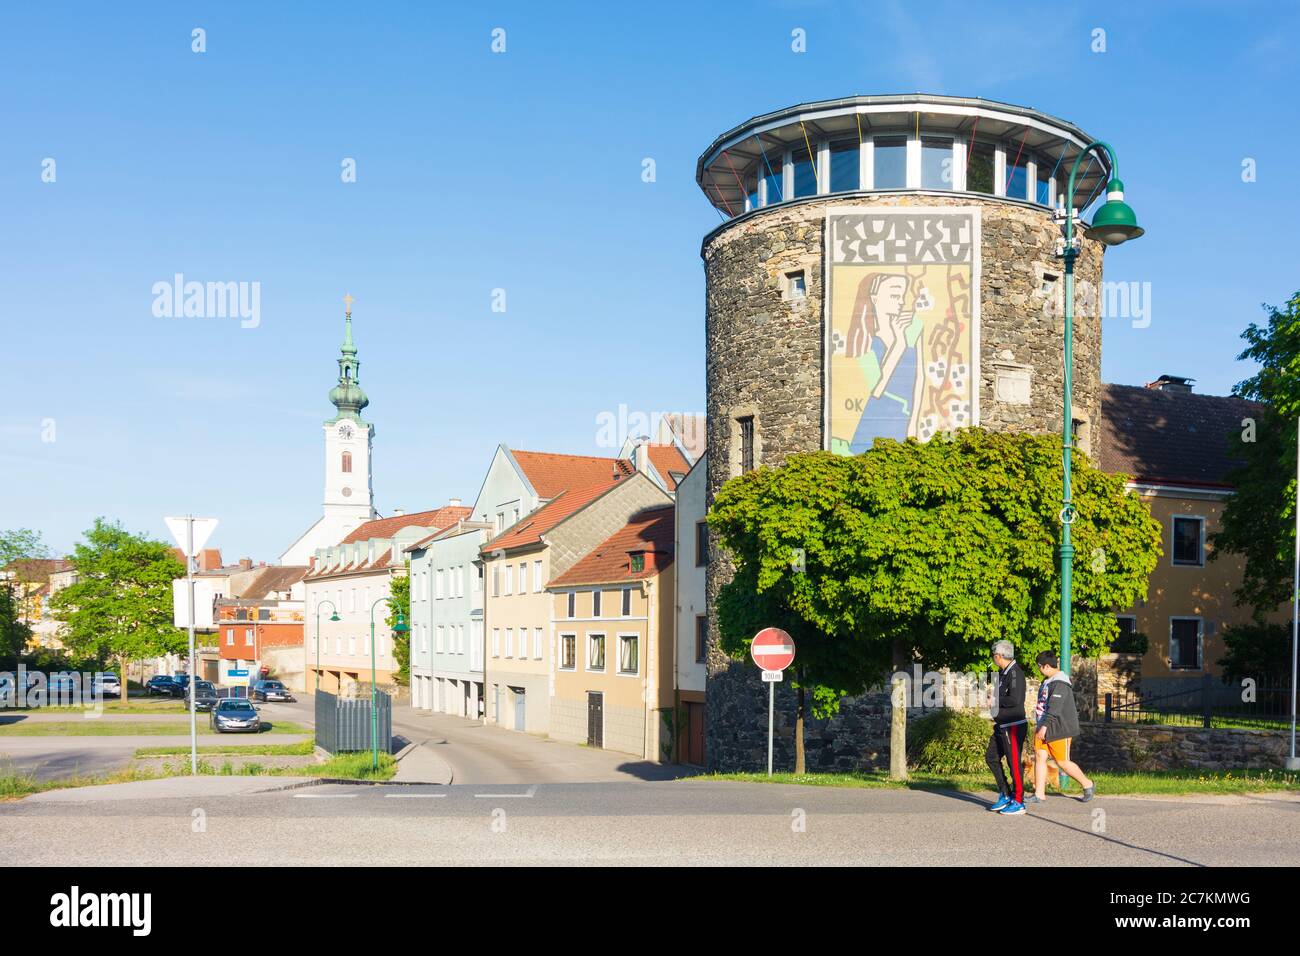 Pöchlarn, tower Welserturm, church, Mostviertel region, Niederösterreich / Lower Austria, Austria Stock Photo